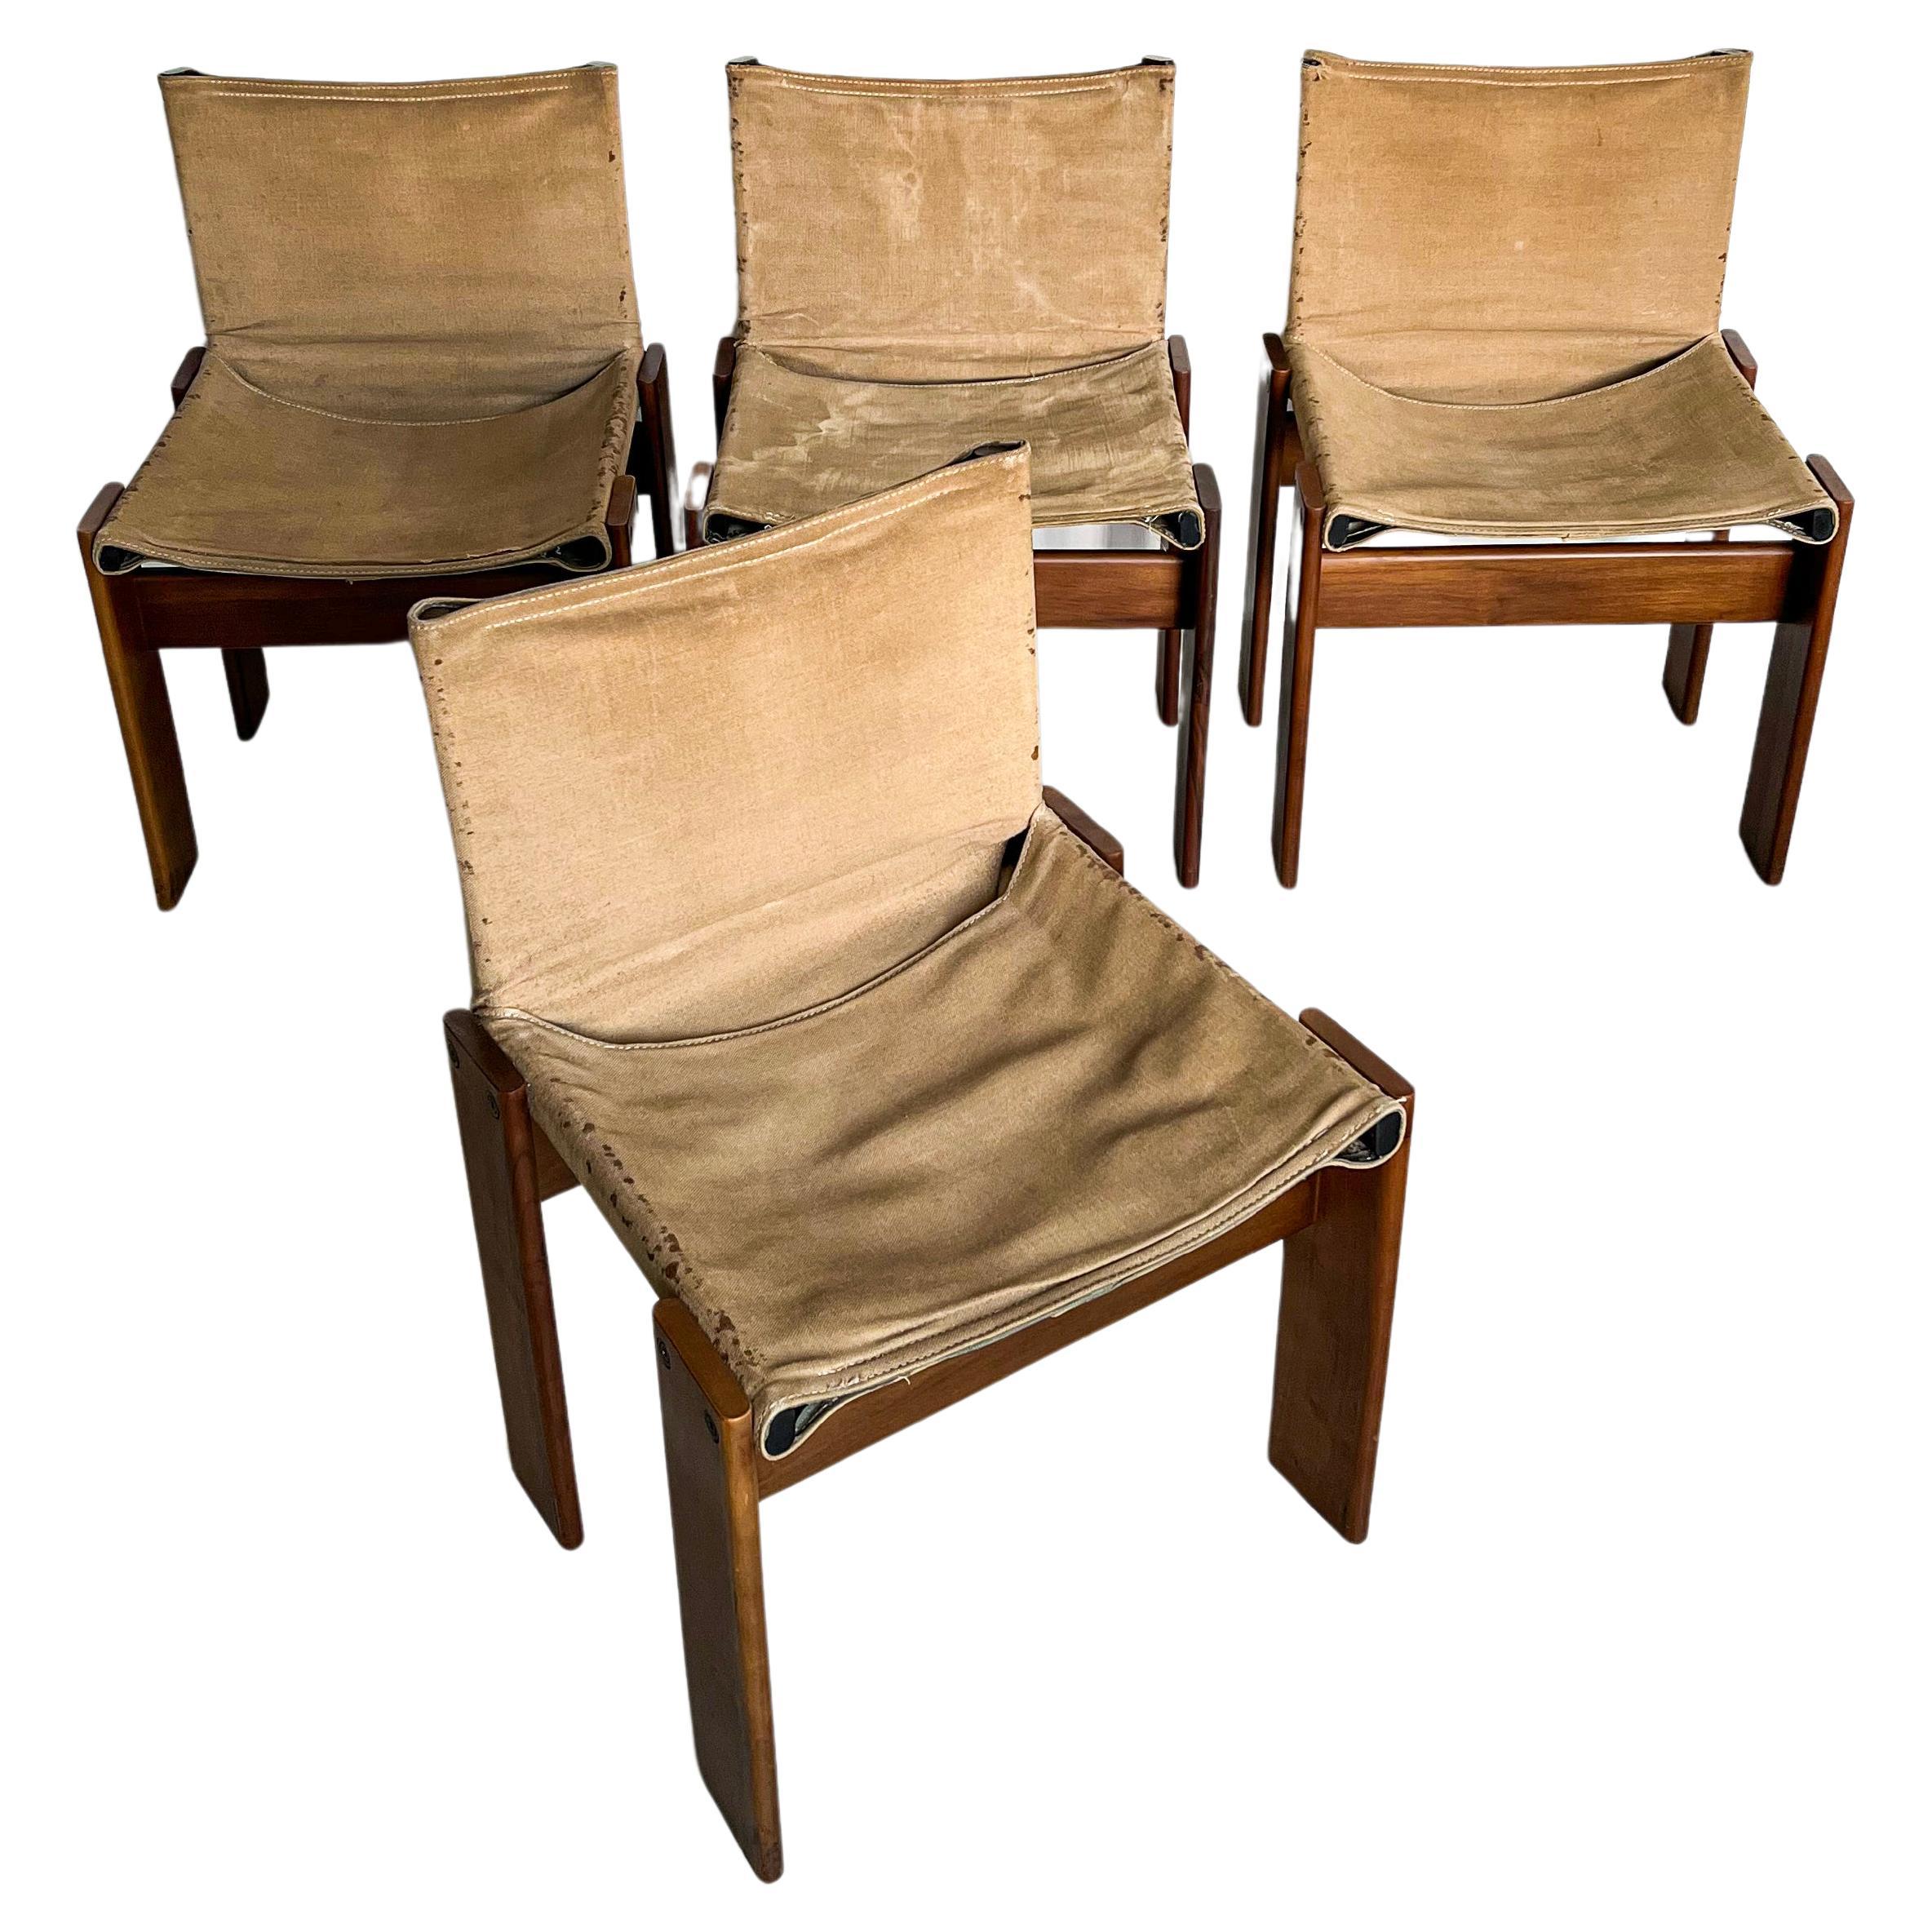 Seltene Vintage-Monk-Esszimmerstühle von Afra und Tobia Scarpa, italienisches Sammlerstück